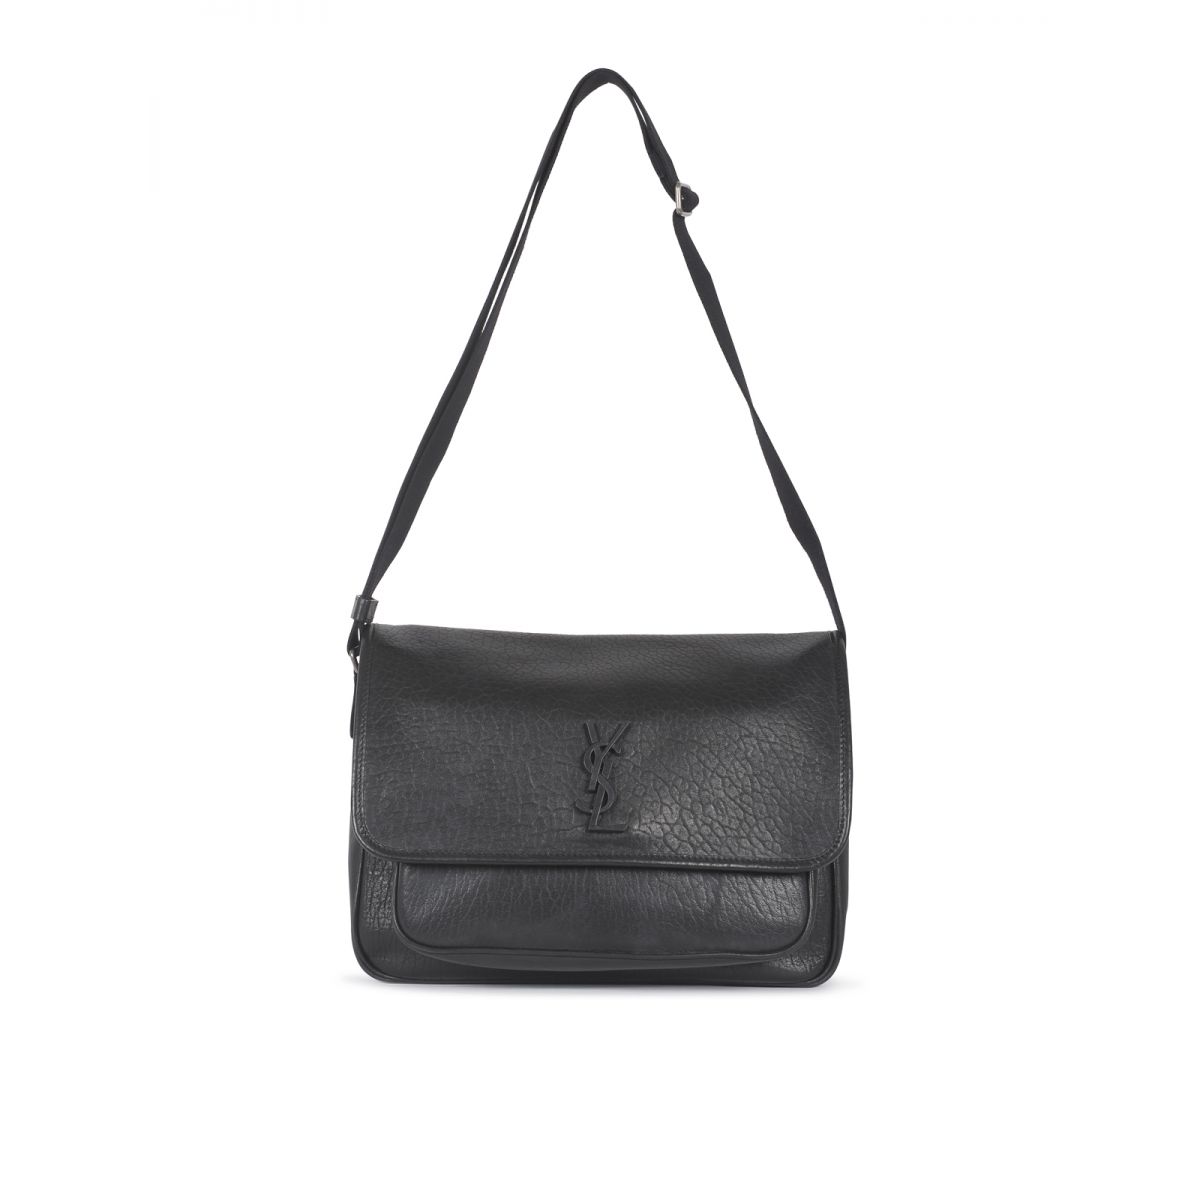 SAINT LAURENT - Niki messenger bag in grained leather